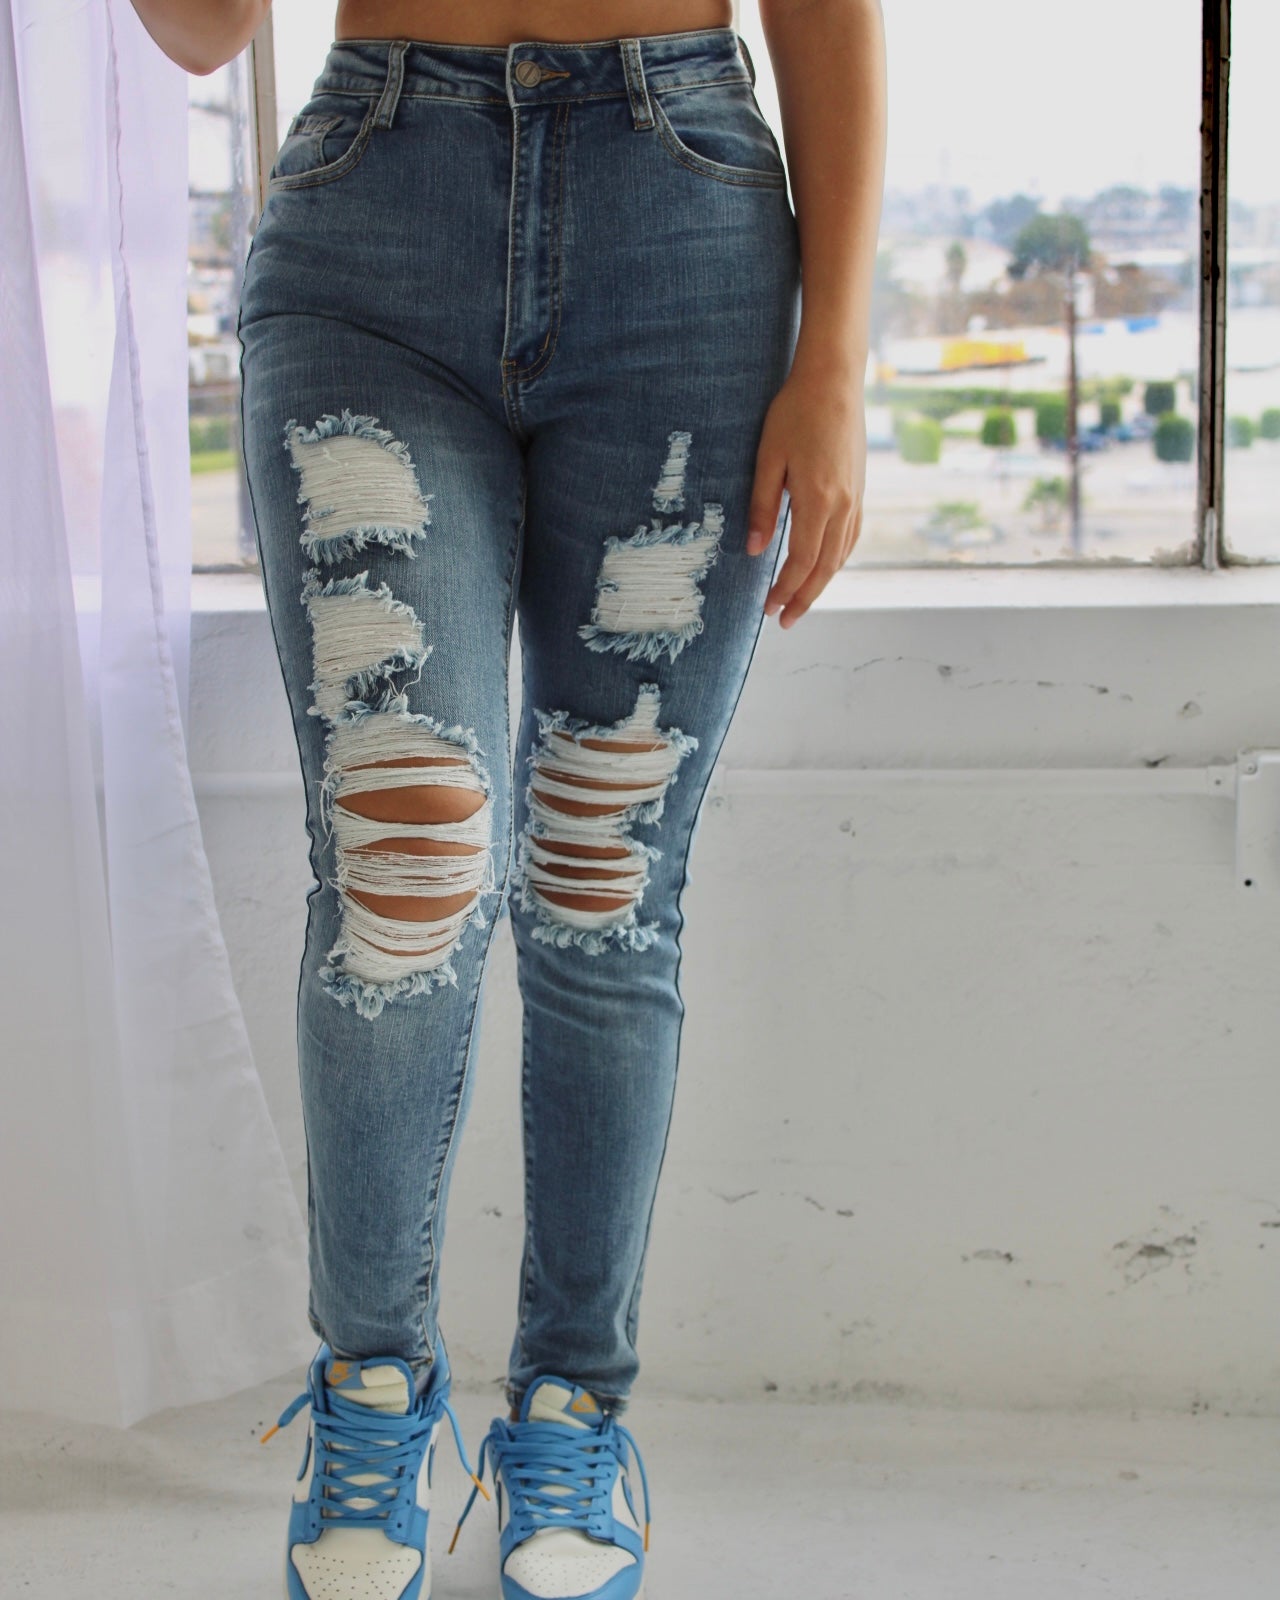 Roxy jeans